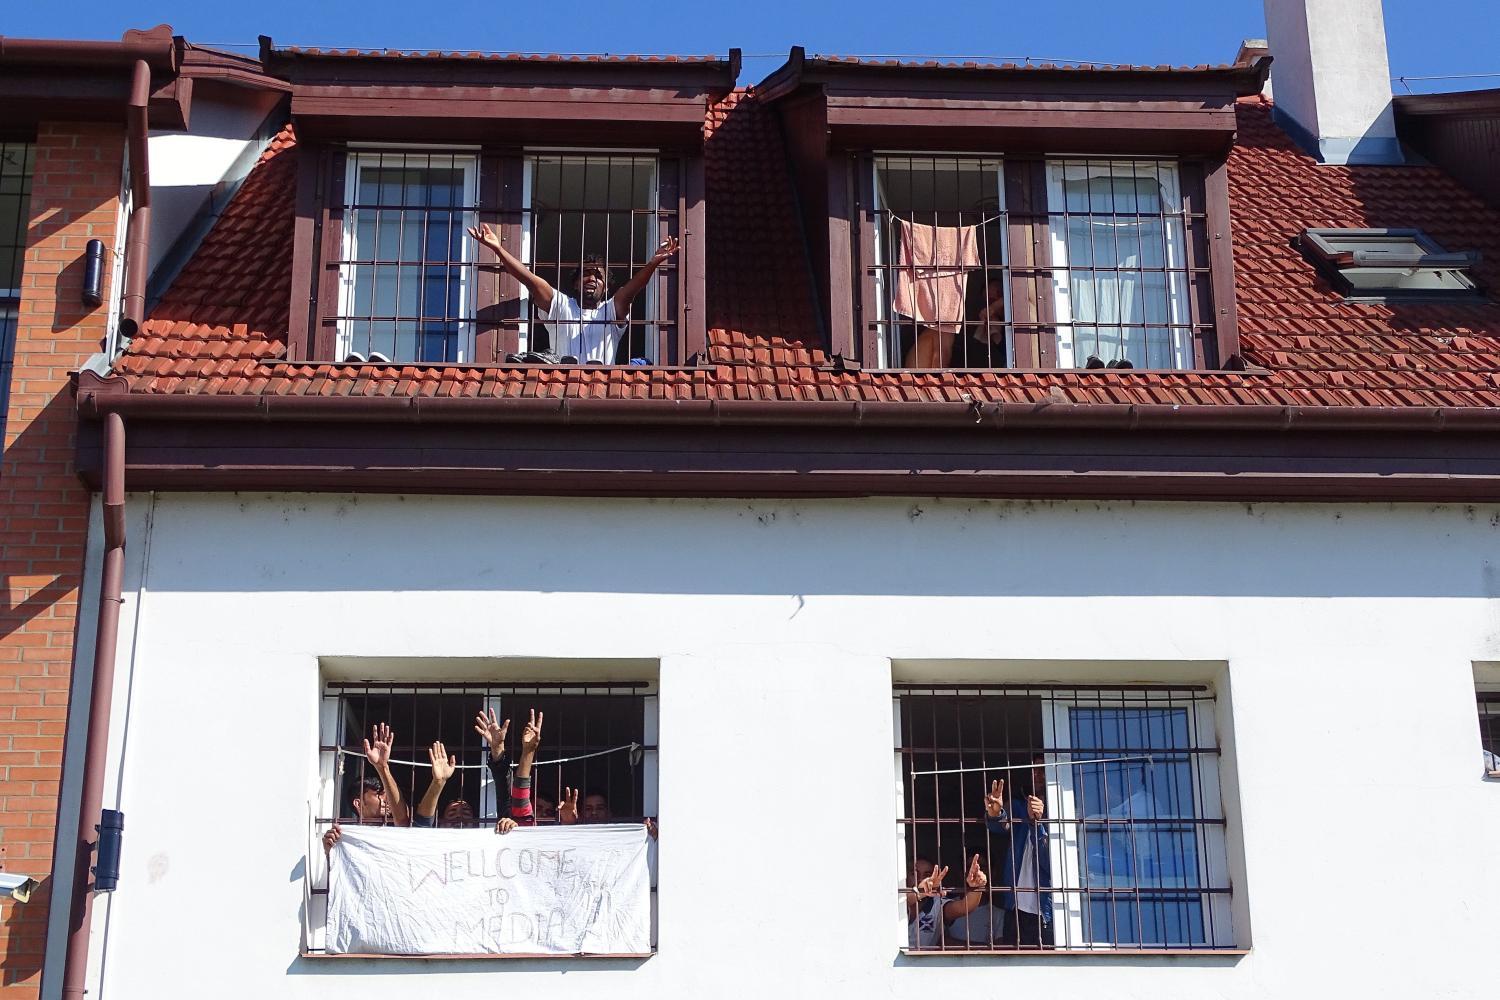 Migránsok demonstráltak a békéscsabai Menekültügyi Őrzött Befogadó Központ ablakában június 6-án. Ezen a napon a zárt központban mintegy hetven menedékkérő lepedőkre írt feliratokkal követelte szabadon bocsátását. A lassú ügyintézés miatt amiatt is t